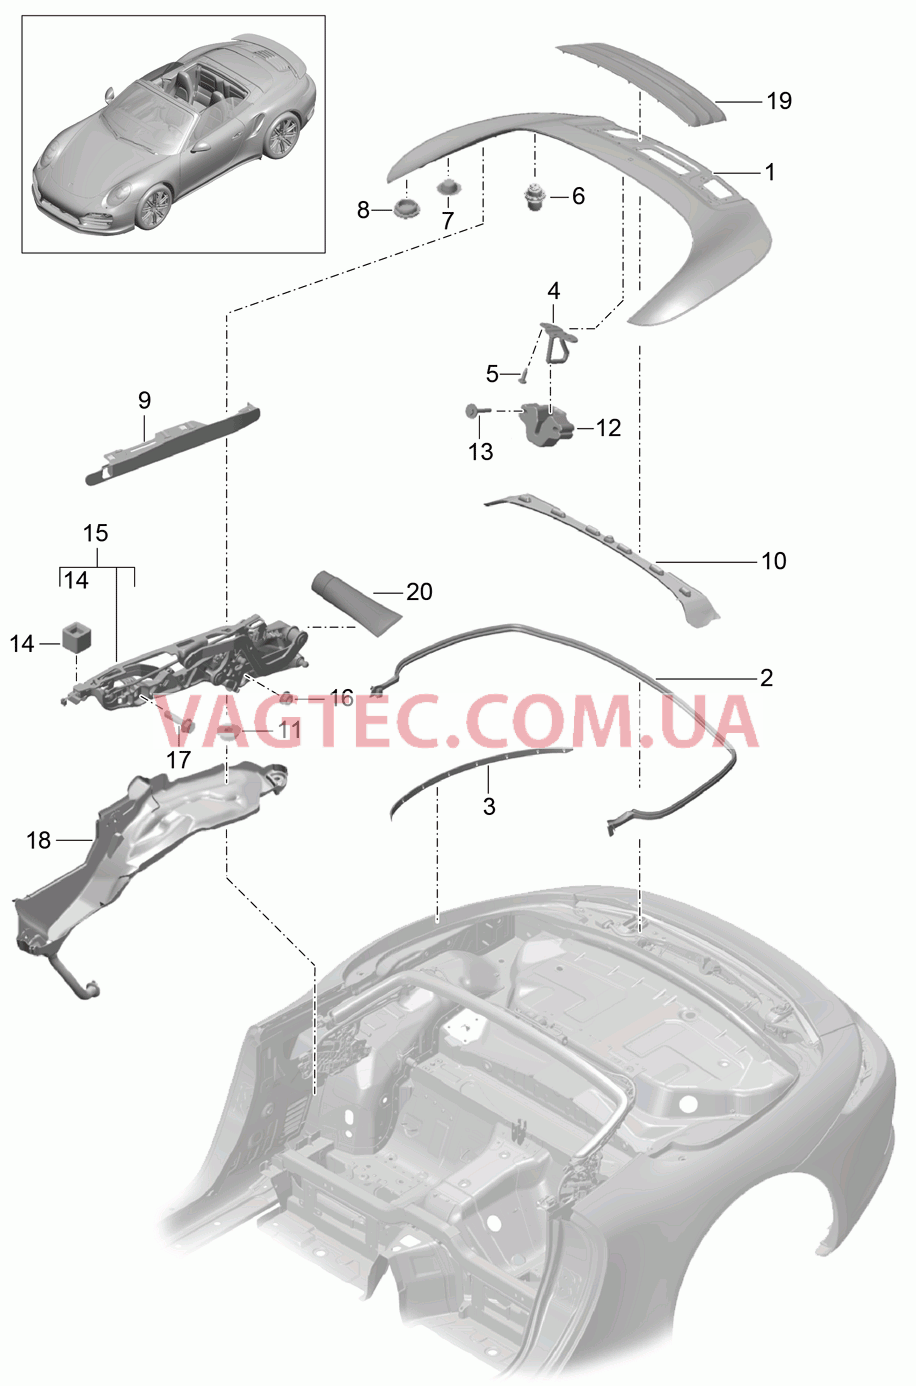 811-060 Отсек складного верха, Крышка
						
						CABRIO для PORSCHE Porsche991Turbo 2014-2017